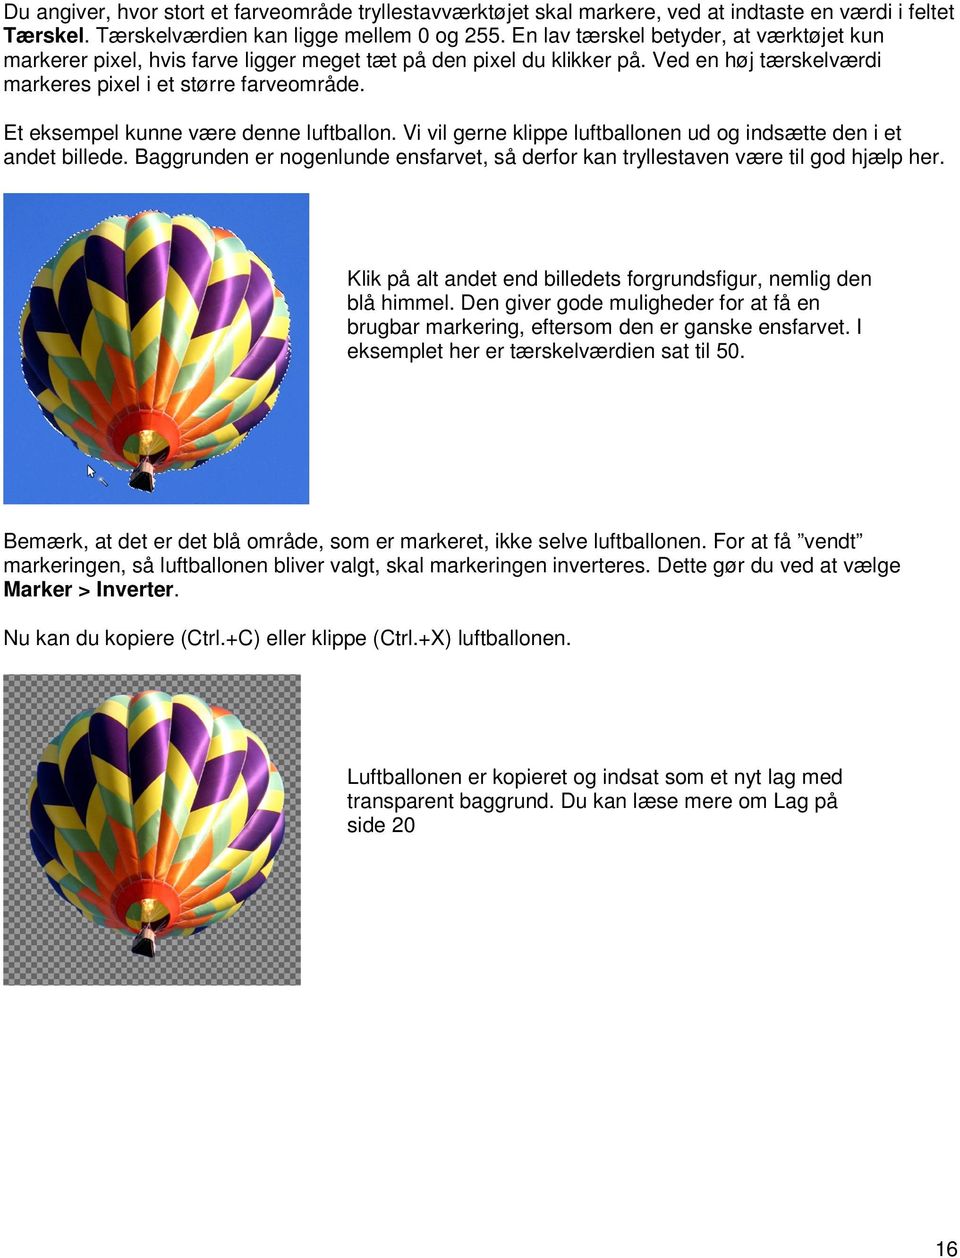 Et eksempel kunne være denne luftballon. Vi vil gerne klippe luftballonen ud og indsætte den i et andet billede. Baggrunden er nogenlunde ensfarvet, så derfor kan tryllestaven være til god hjælp her.